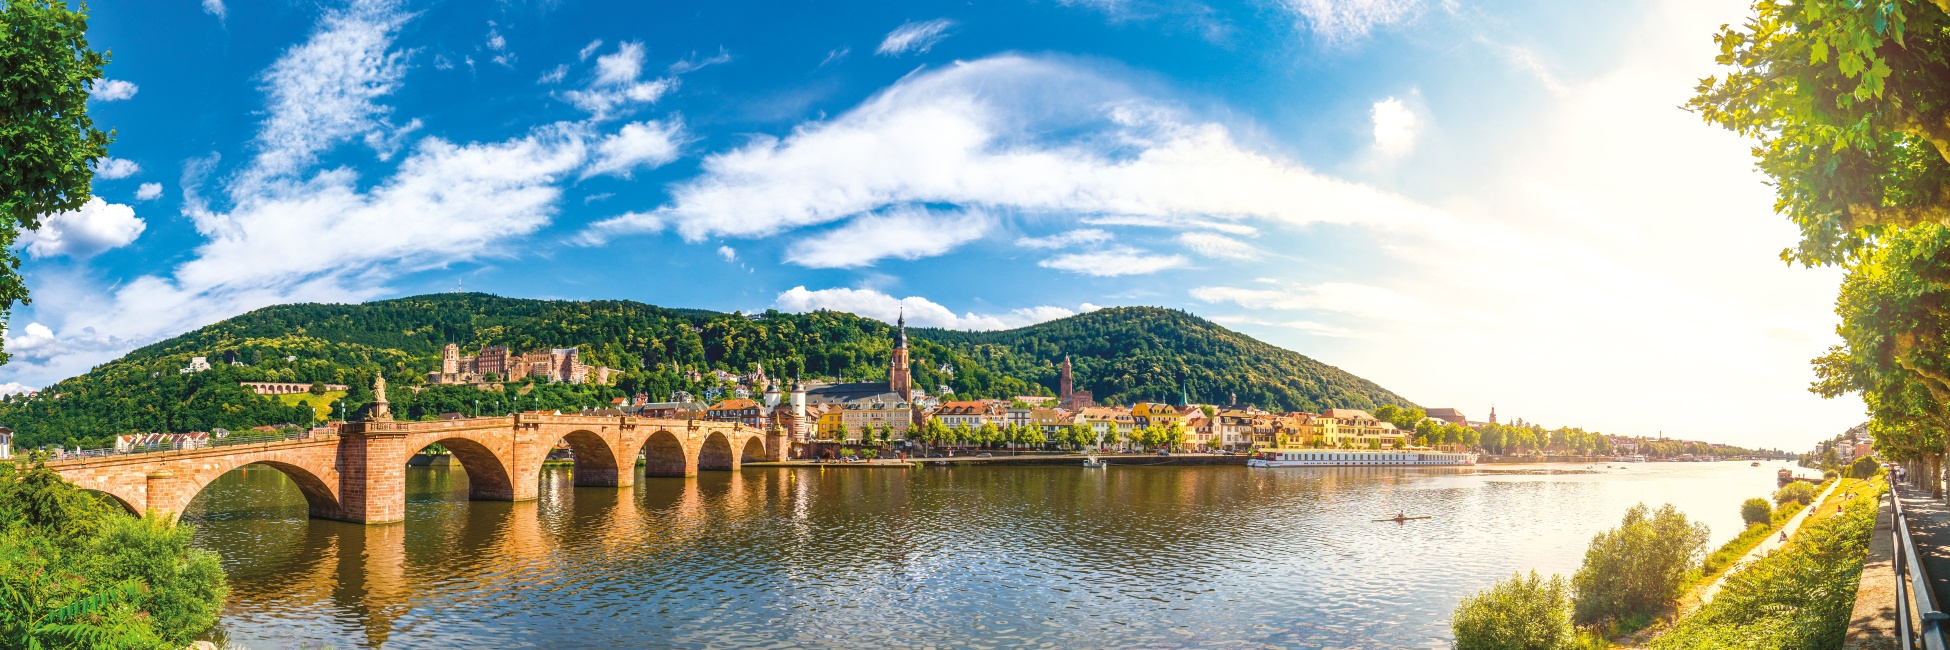 RSB_PP - 4 ríos: Los valles de Mosela, Sarre, Rin romántico y Neckar